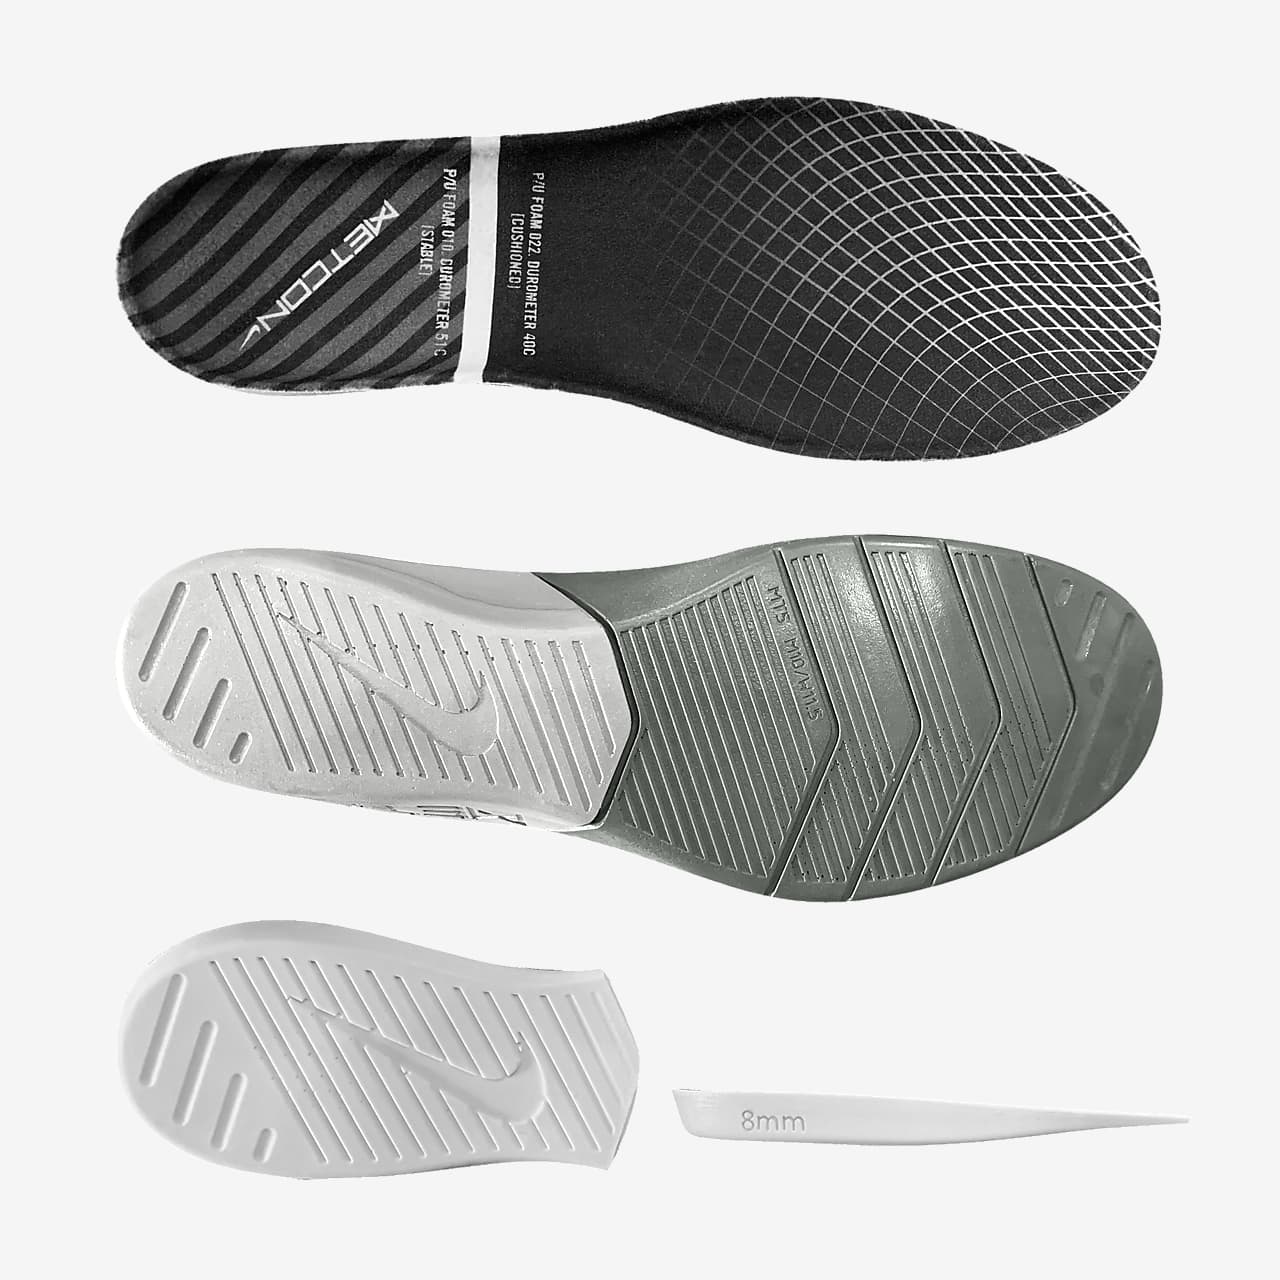 Calzado de entrenamiento personalizado Nike Metcon 6 By You. Nike.com